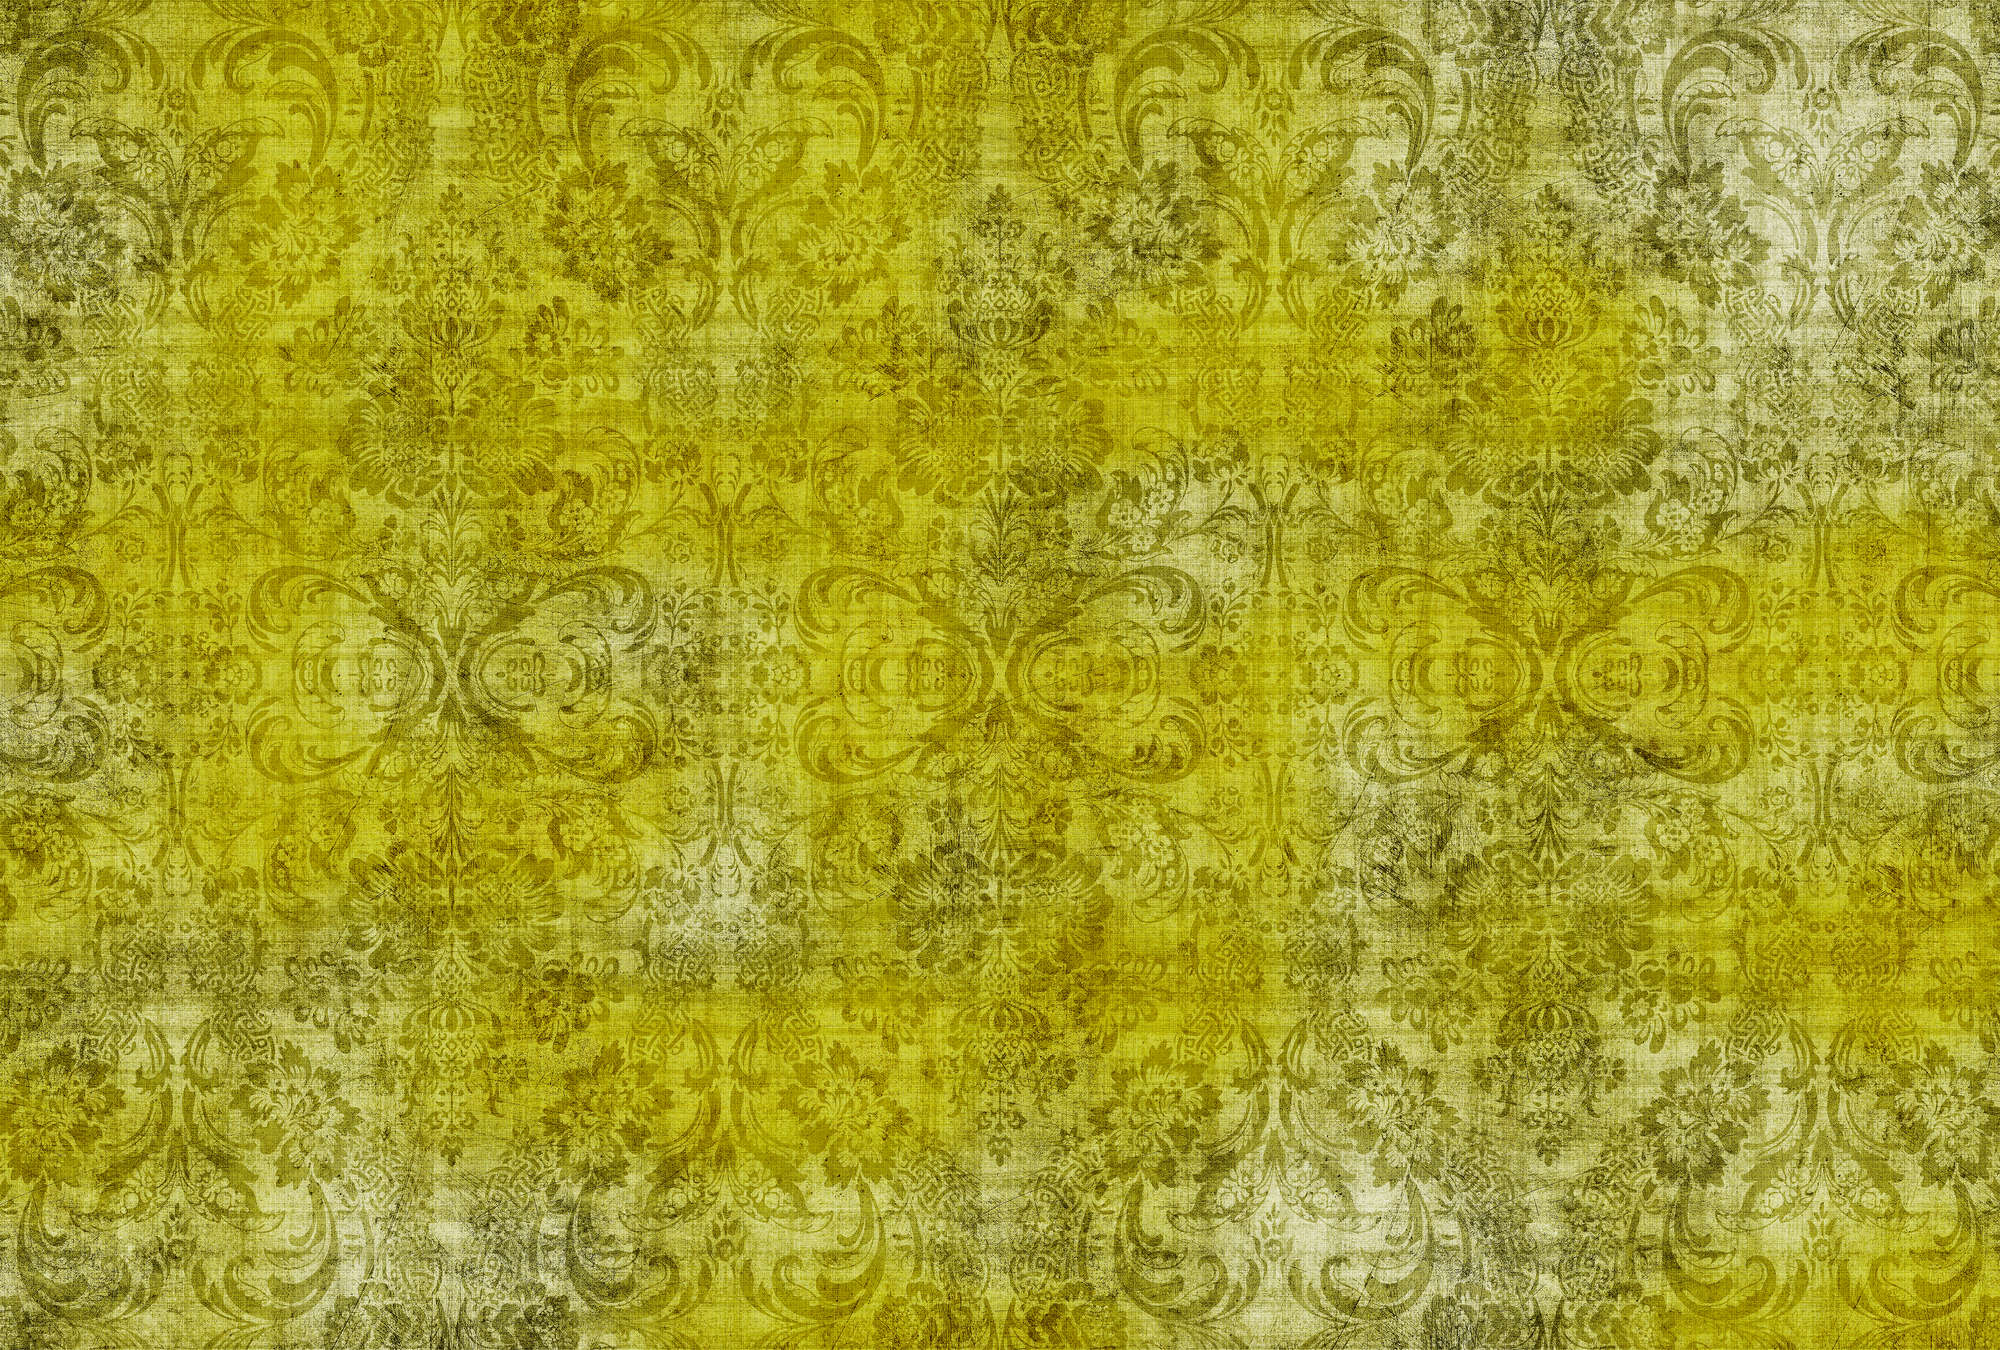             Damasco antiguo 1 - Ornamentos sobre papel pintado fotográfico moteado amarillo en estructura de lino natural - Amarillo | Tejido sin tejer liso mate
        